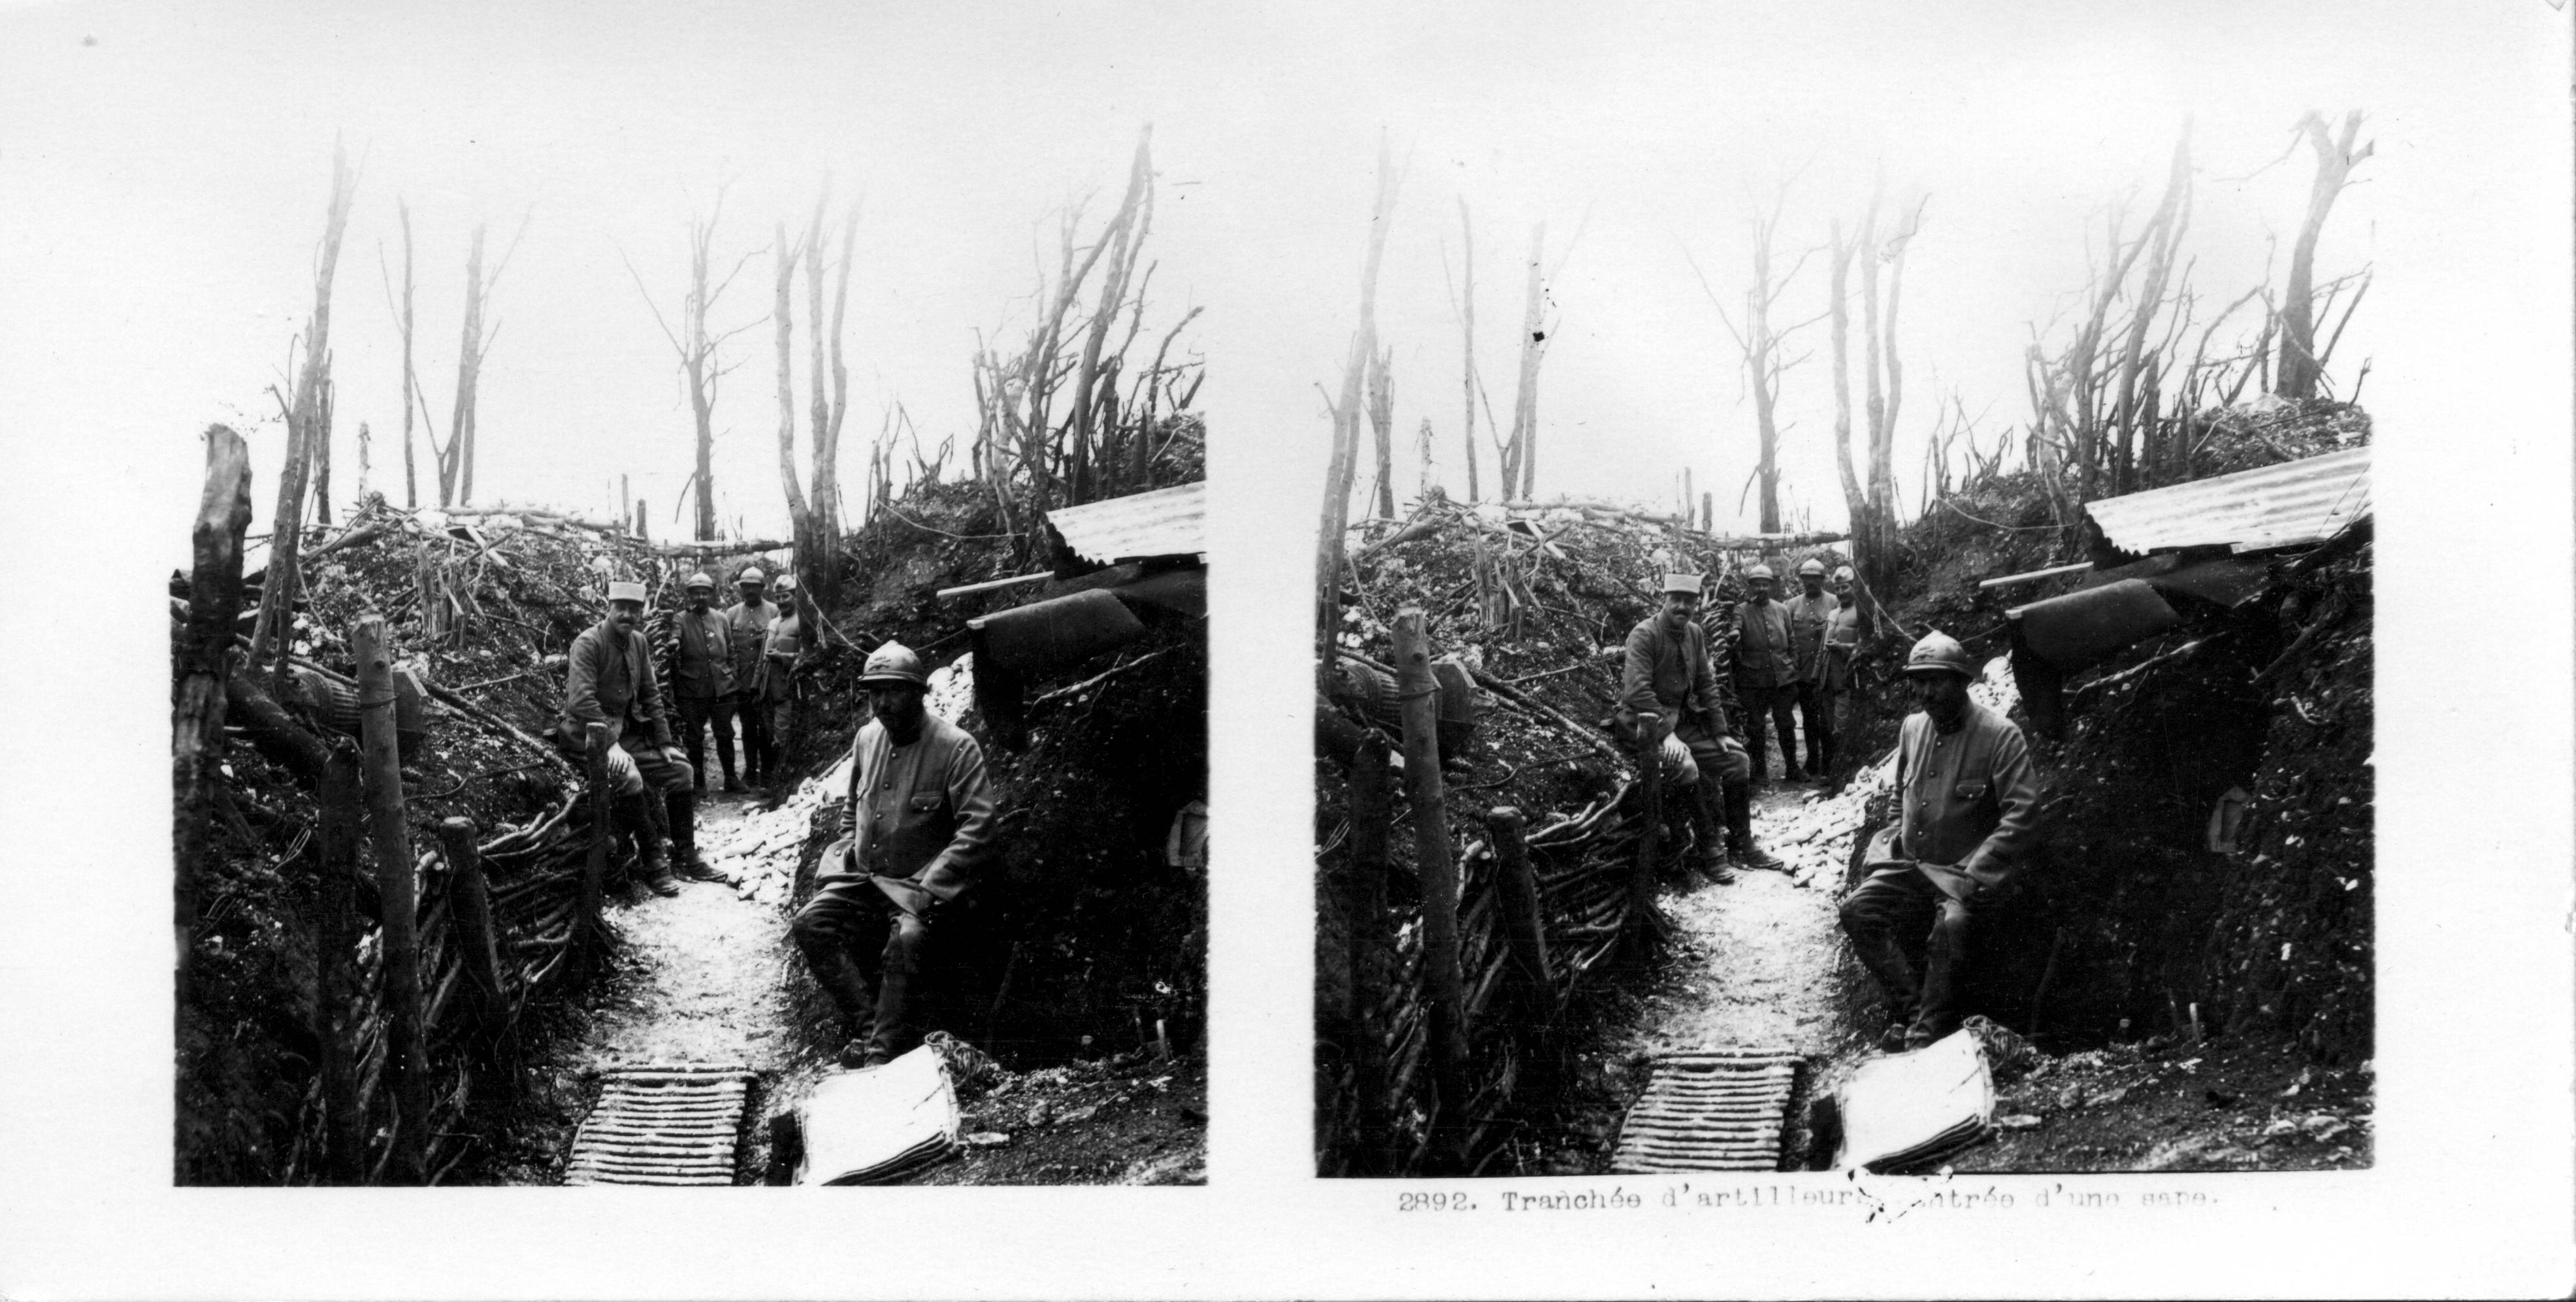 "Tranchée d'artilleurs, Entrée d'une sape" - Artillery trench. Entry to a sap